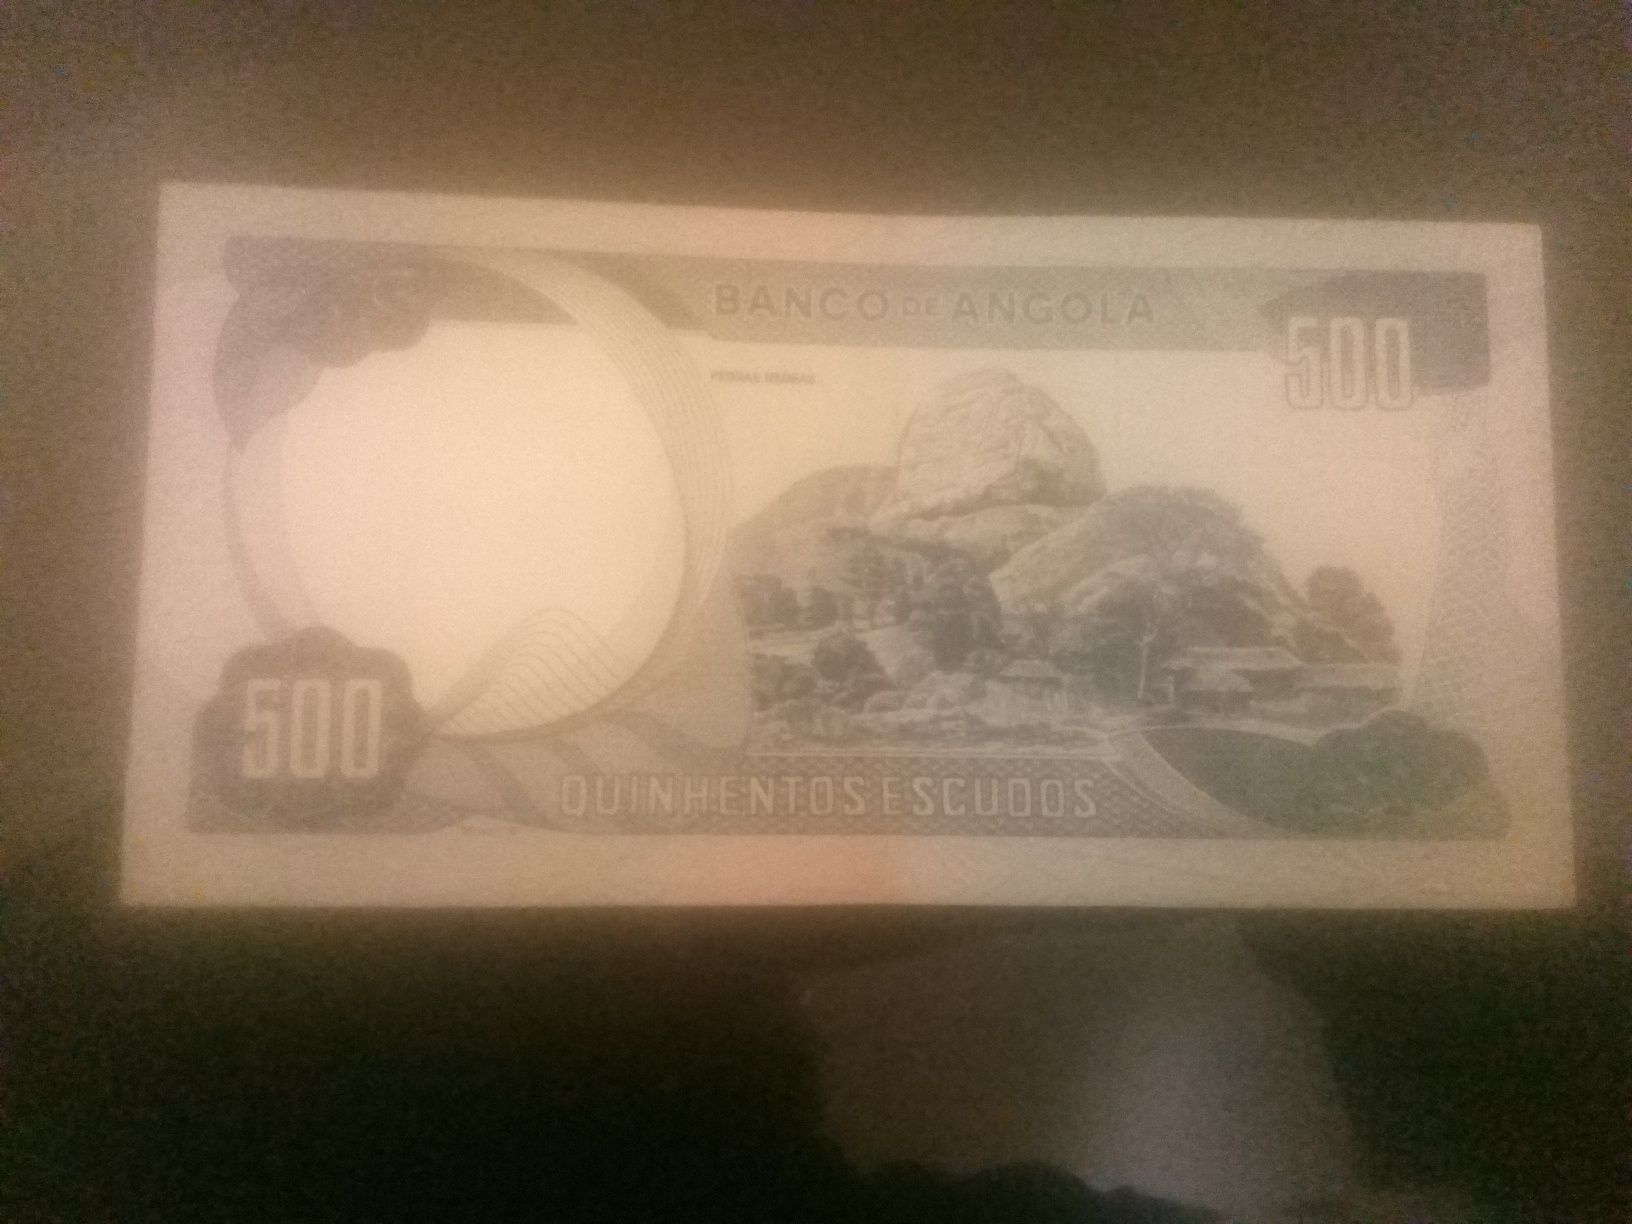 Nota 500 escudos do Banco de Angola. Em bom estado